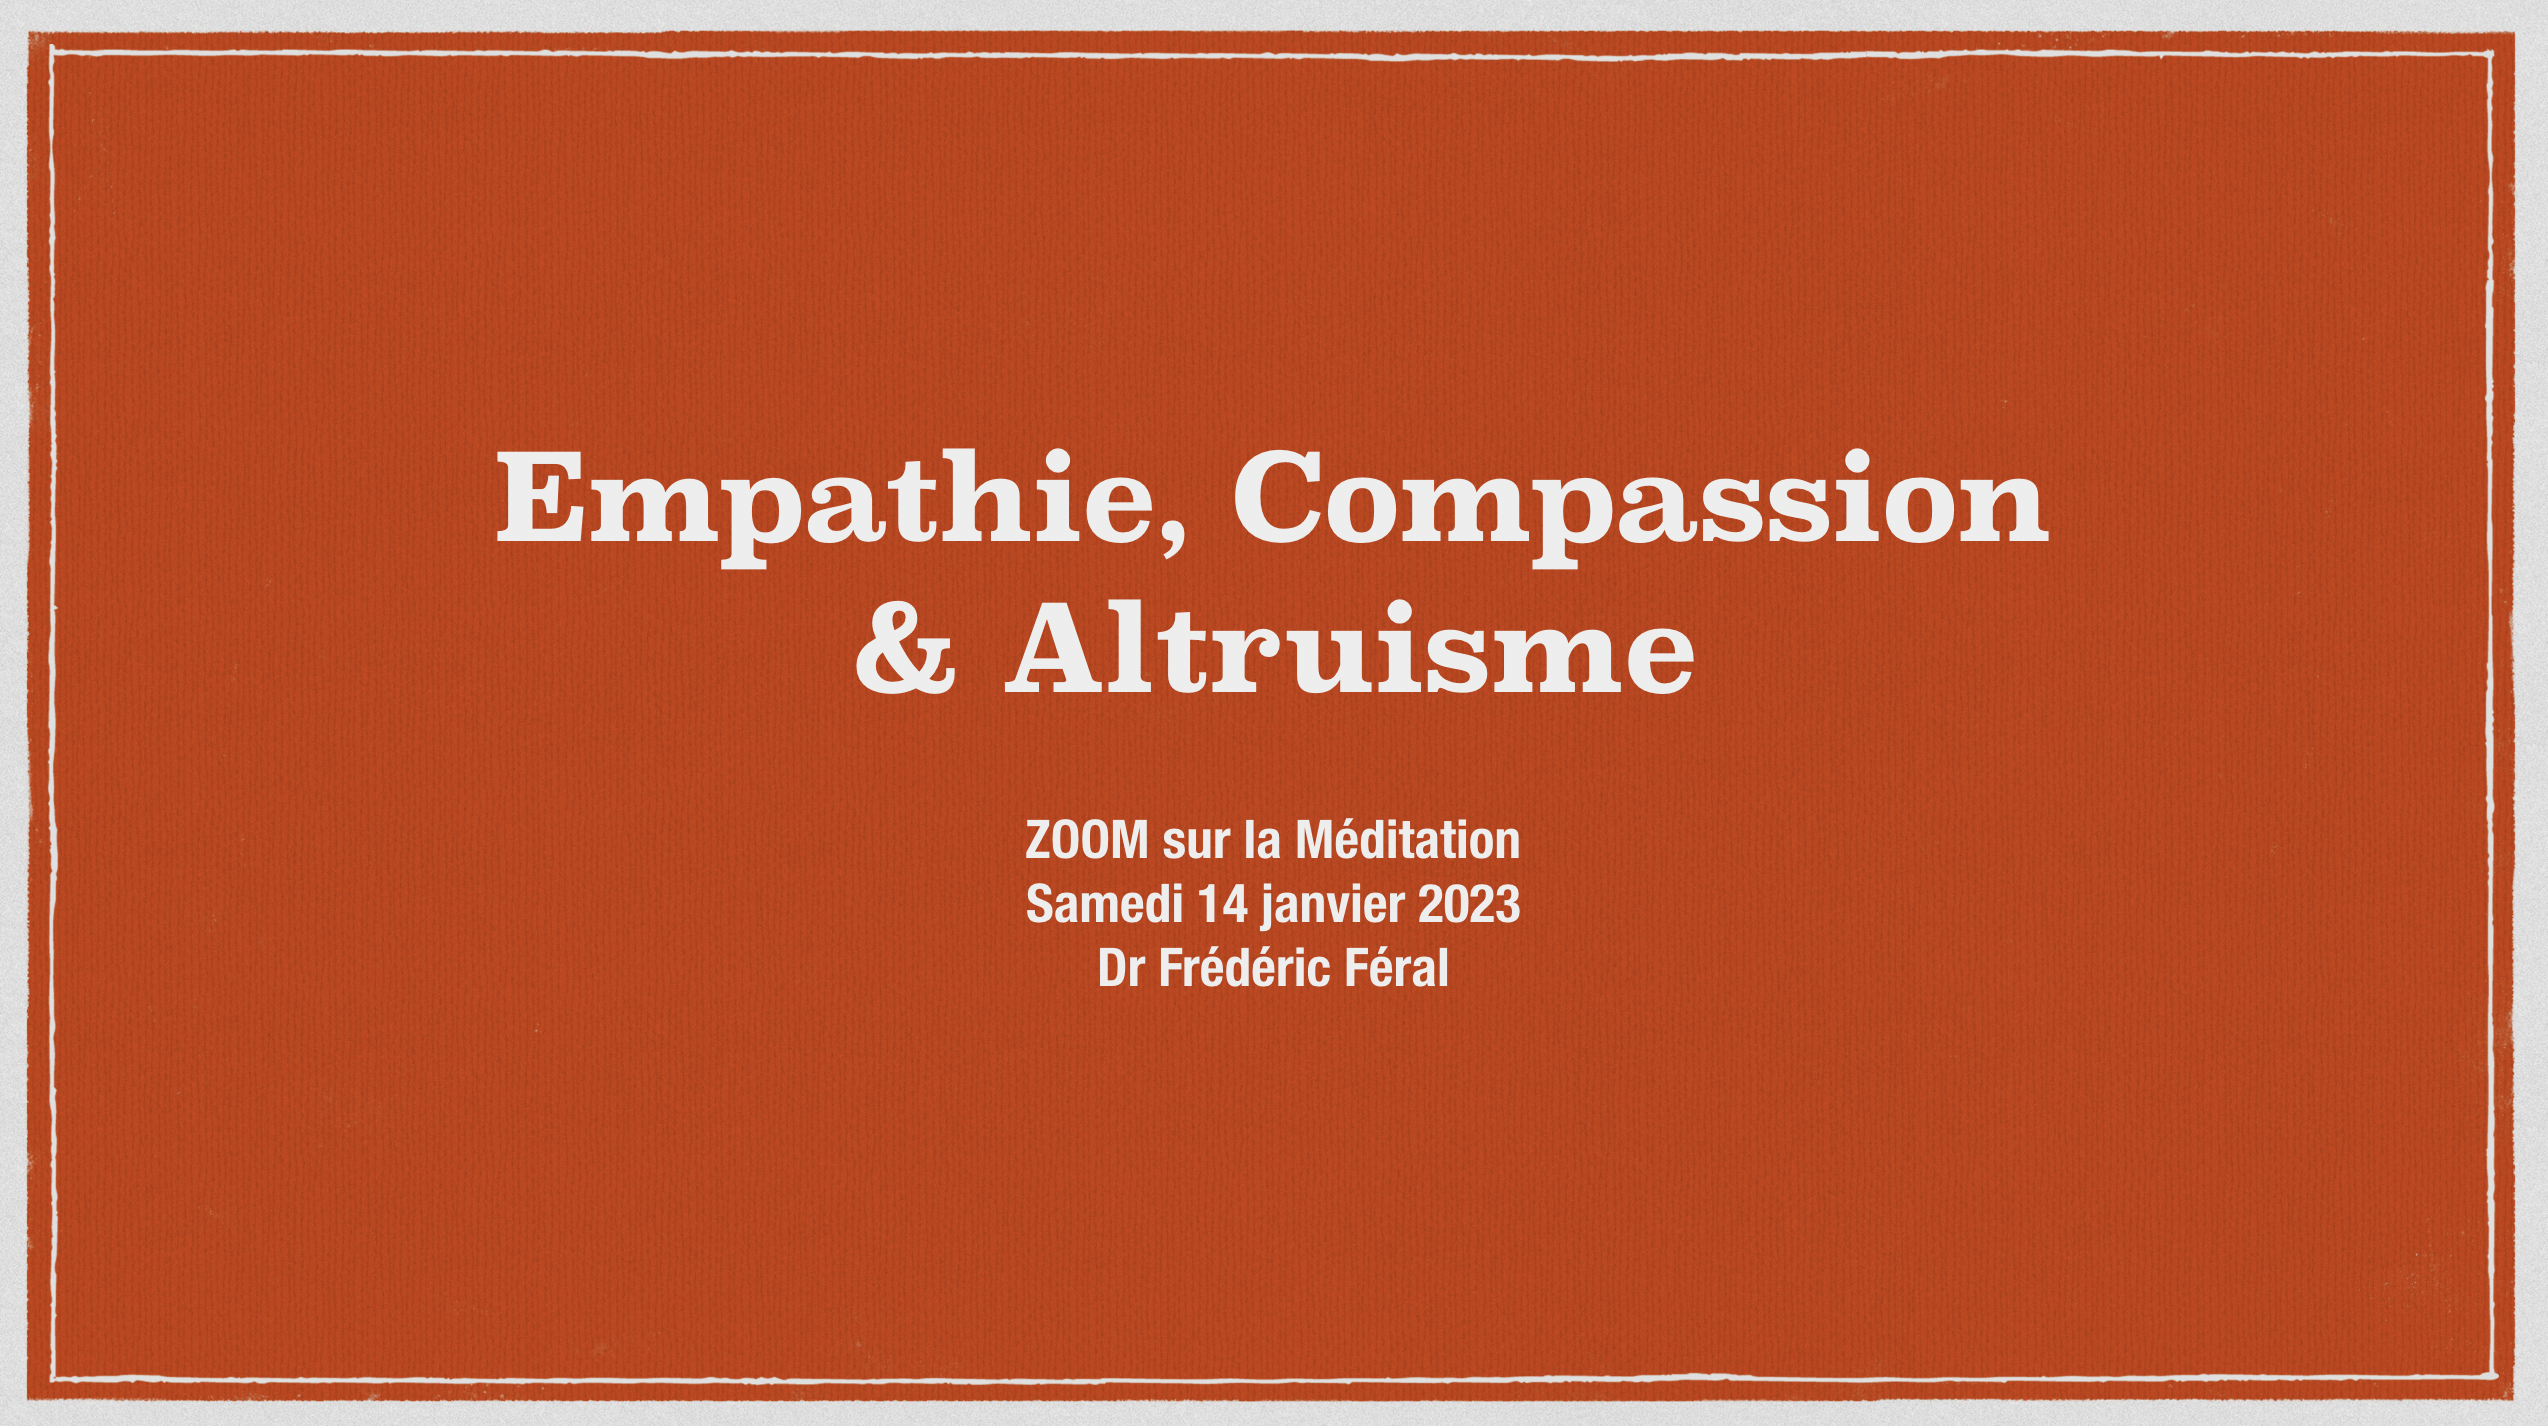 Empathie, Compassion & Altruisme